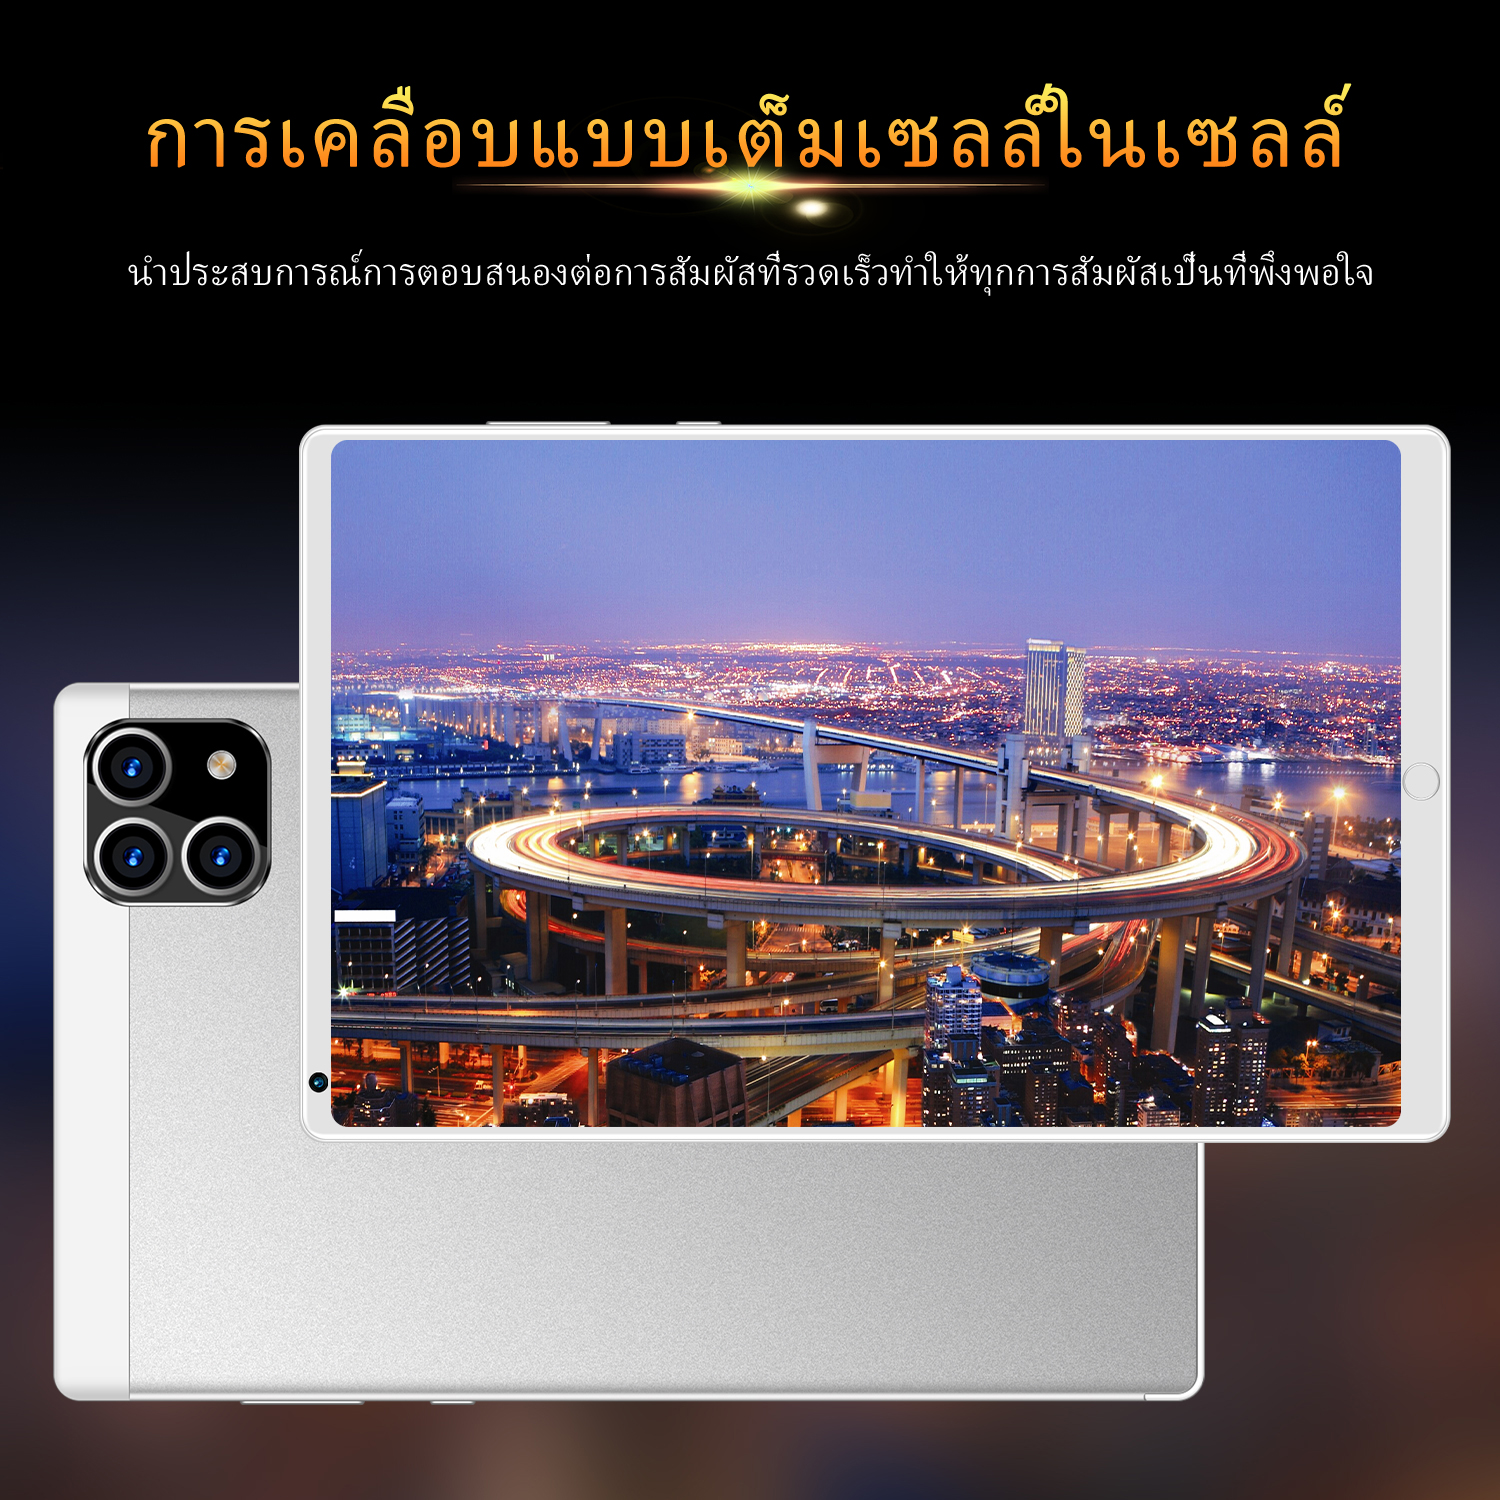 ภาพที่ให้รายละเอียดเกี่ยวกับ ใหม่ Tablet Xiaomi Pad 5 แท็บเล็ต RAM12G ROM512G 10.1นิ้ว โทรได้ แท็บเล็ตถูกๆ แท็บเล็ตราคาถูก Andorid 10.0 Tablet จัดส่งฟรี รองรับภาษาไทย หน่วยประมวลผล 10-core แท็บเล็ตโทรได้ แท็บเล็ตสำหรับเล่นเกมราคาถูก แท็บเล็ตราคาถูกๆ แท็บเล็ตราคาถูกรุ่นล่าสุด ไอเเพ็ด